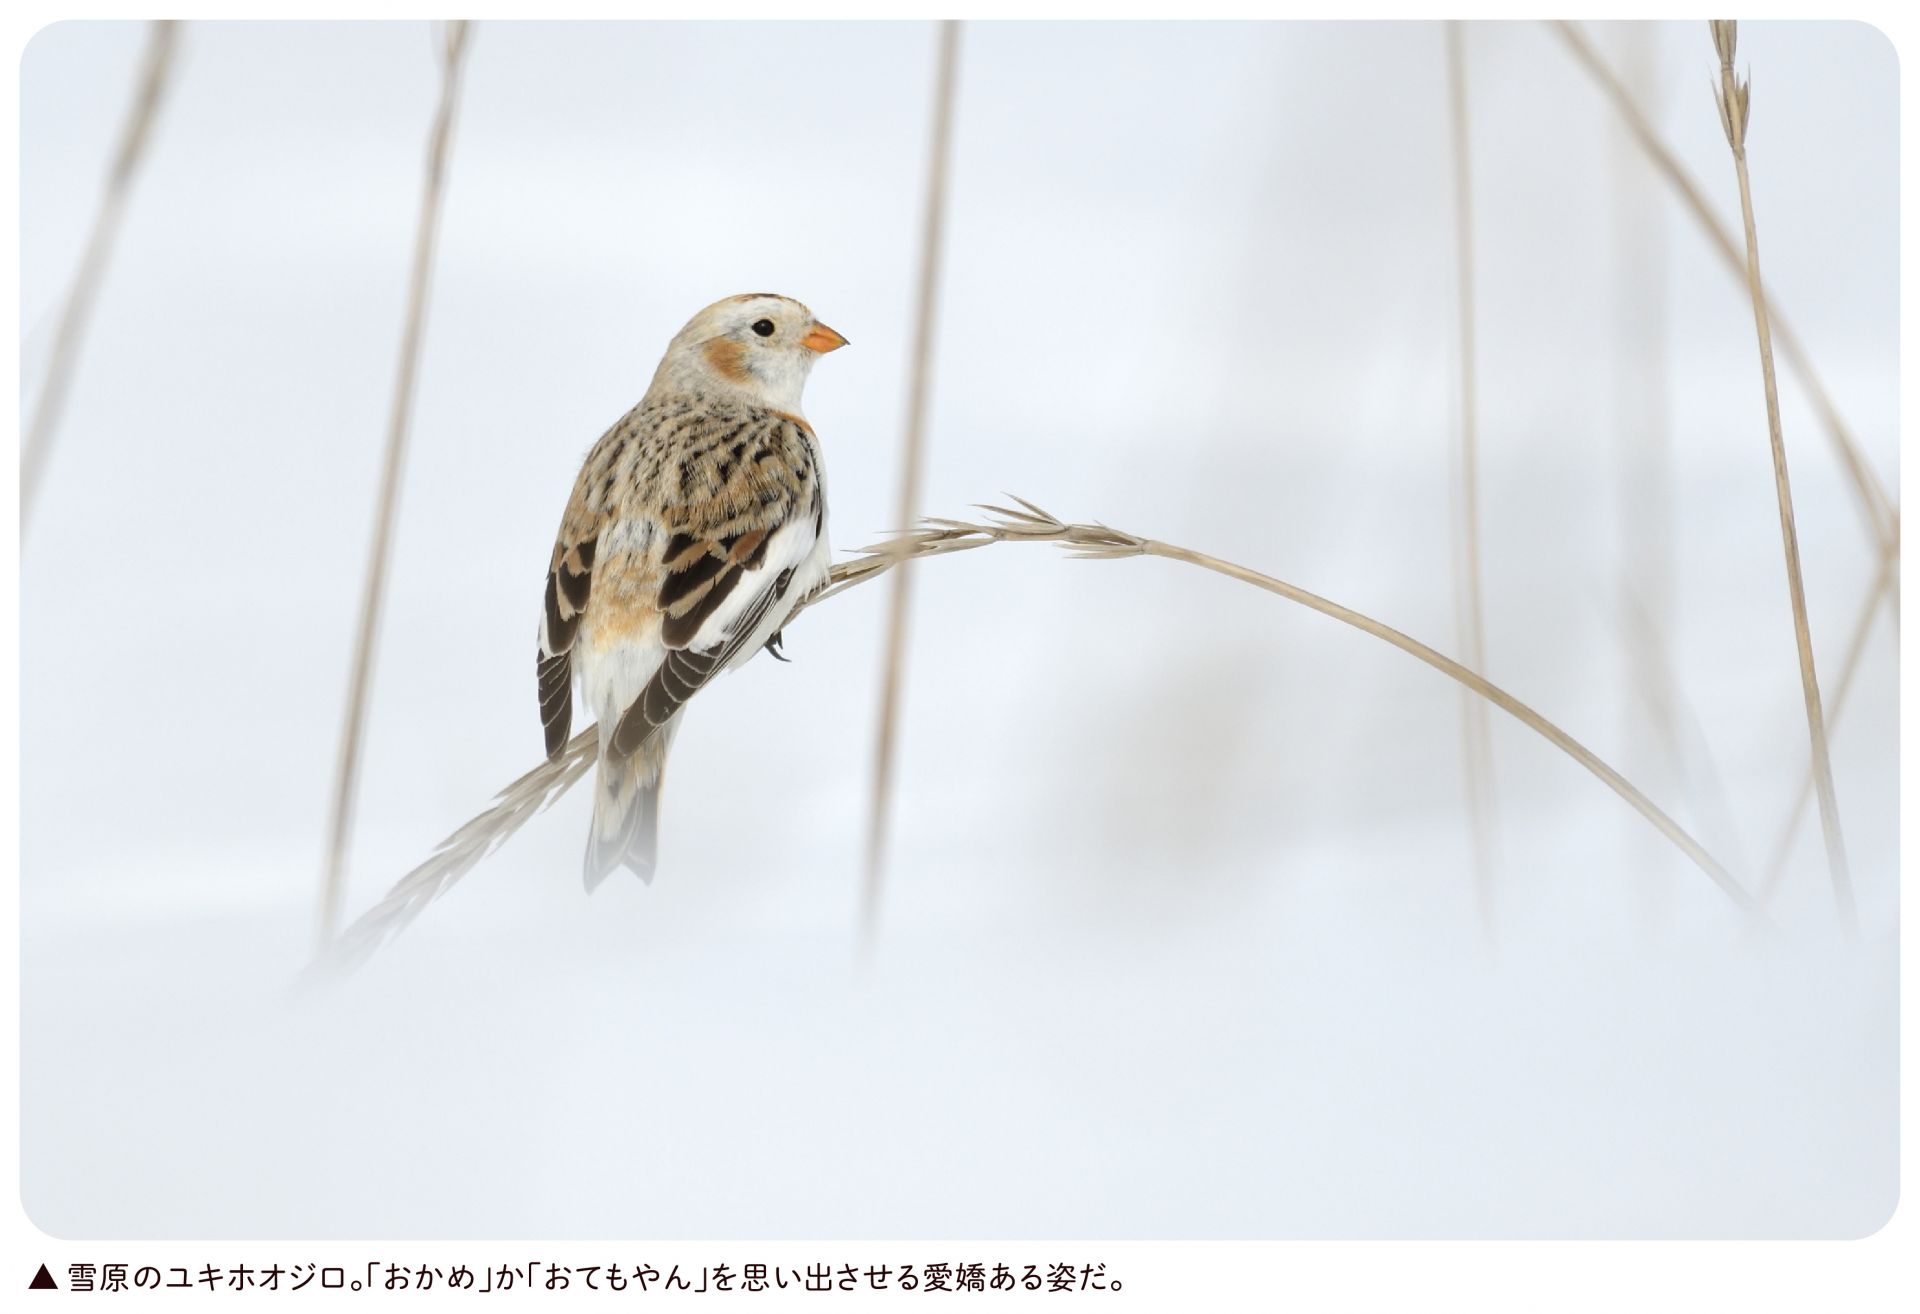 可愛いユキホオジロ ひがし北海道の野鳥図鑑 Bird Land ひがし北海道 釧路 バードウォッチング パラダイスひがし北海道 くしろ